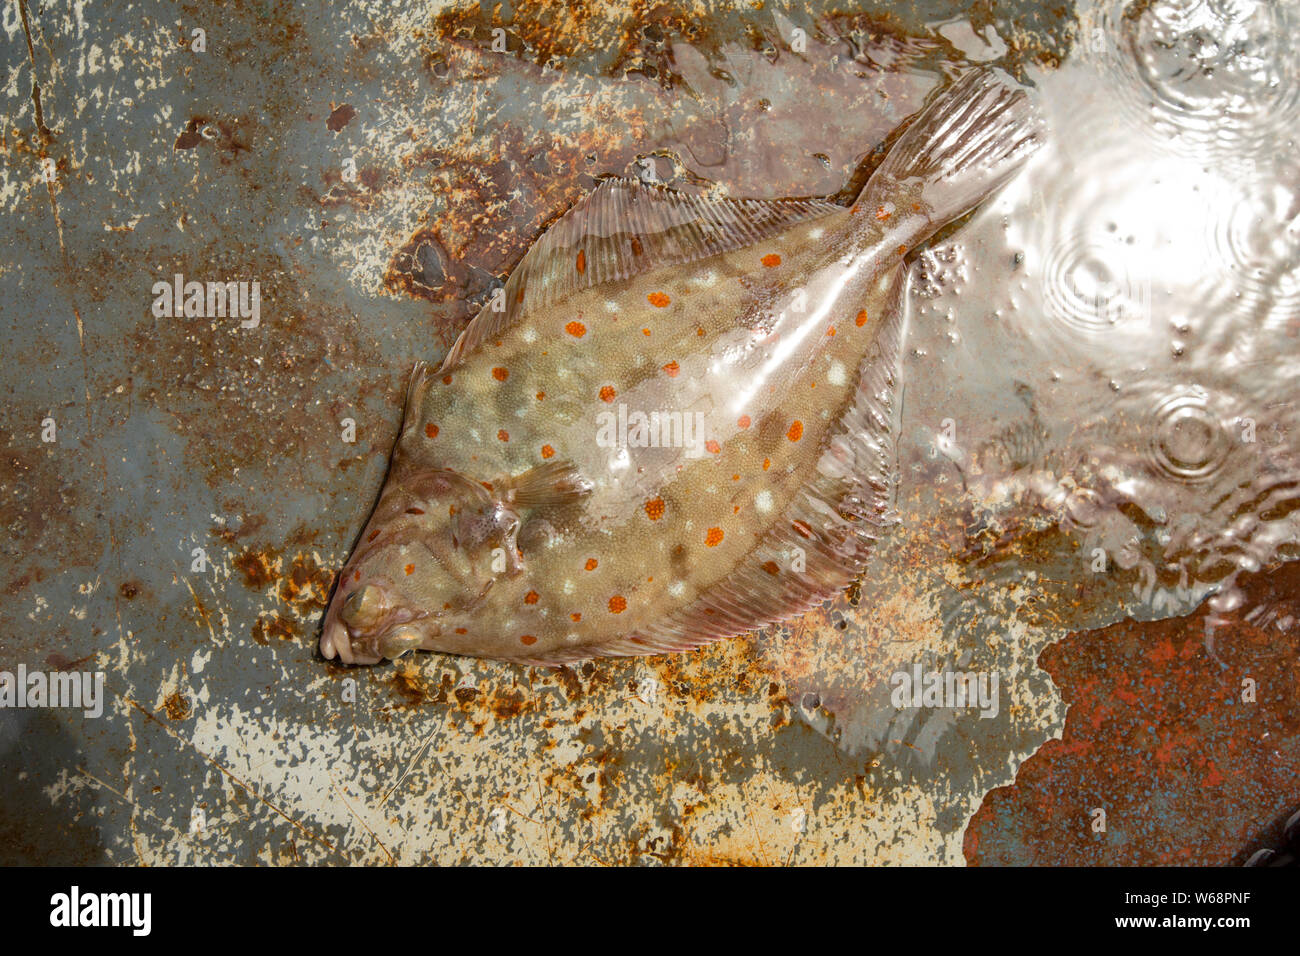 Un, la passera di mare Pleuronectes platessa, sul ponte di una barca da pesca nel Canale della Manica. La Passera di mare sono uno dei molti pesci piatti che utilizzano camouflage per disgiuse Foto Stock